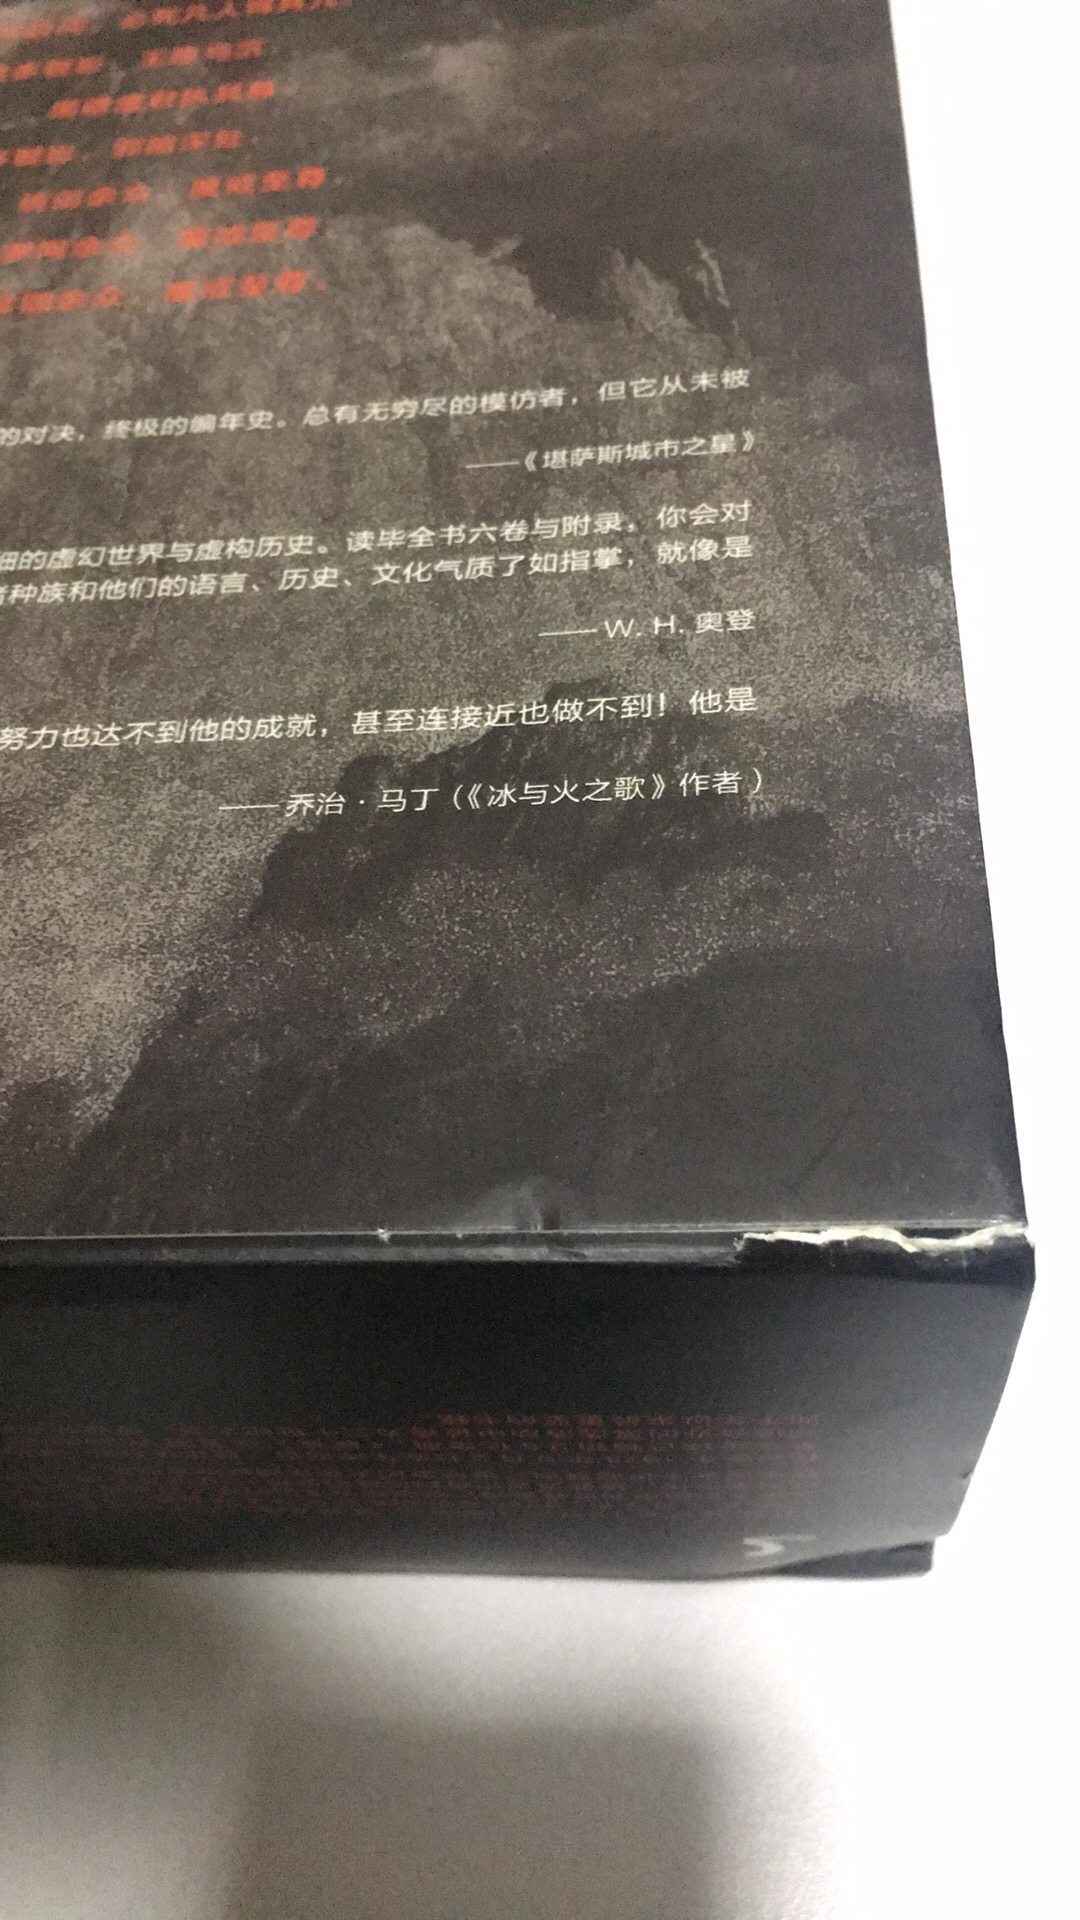 据说这版翻译不错，趁打折时买的。书的外包装盒有破损，但书的质量还是不错的。